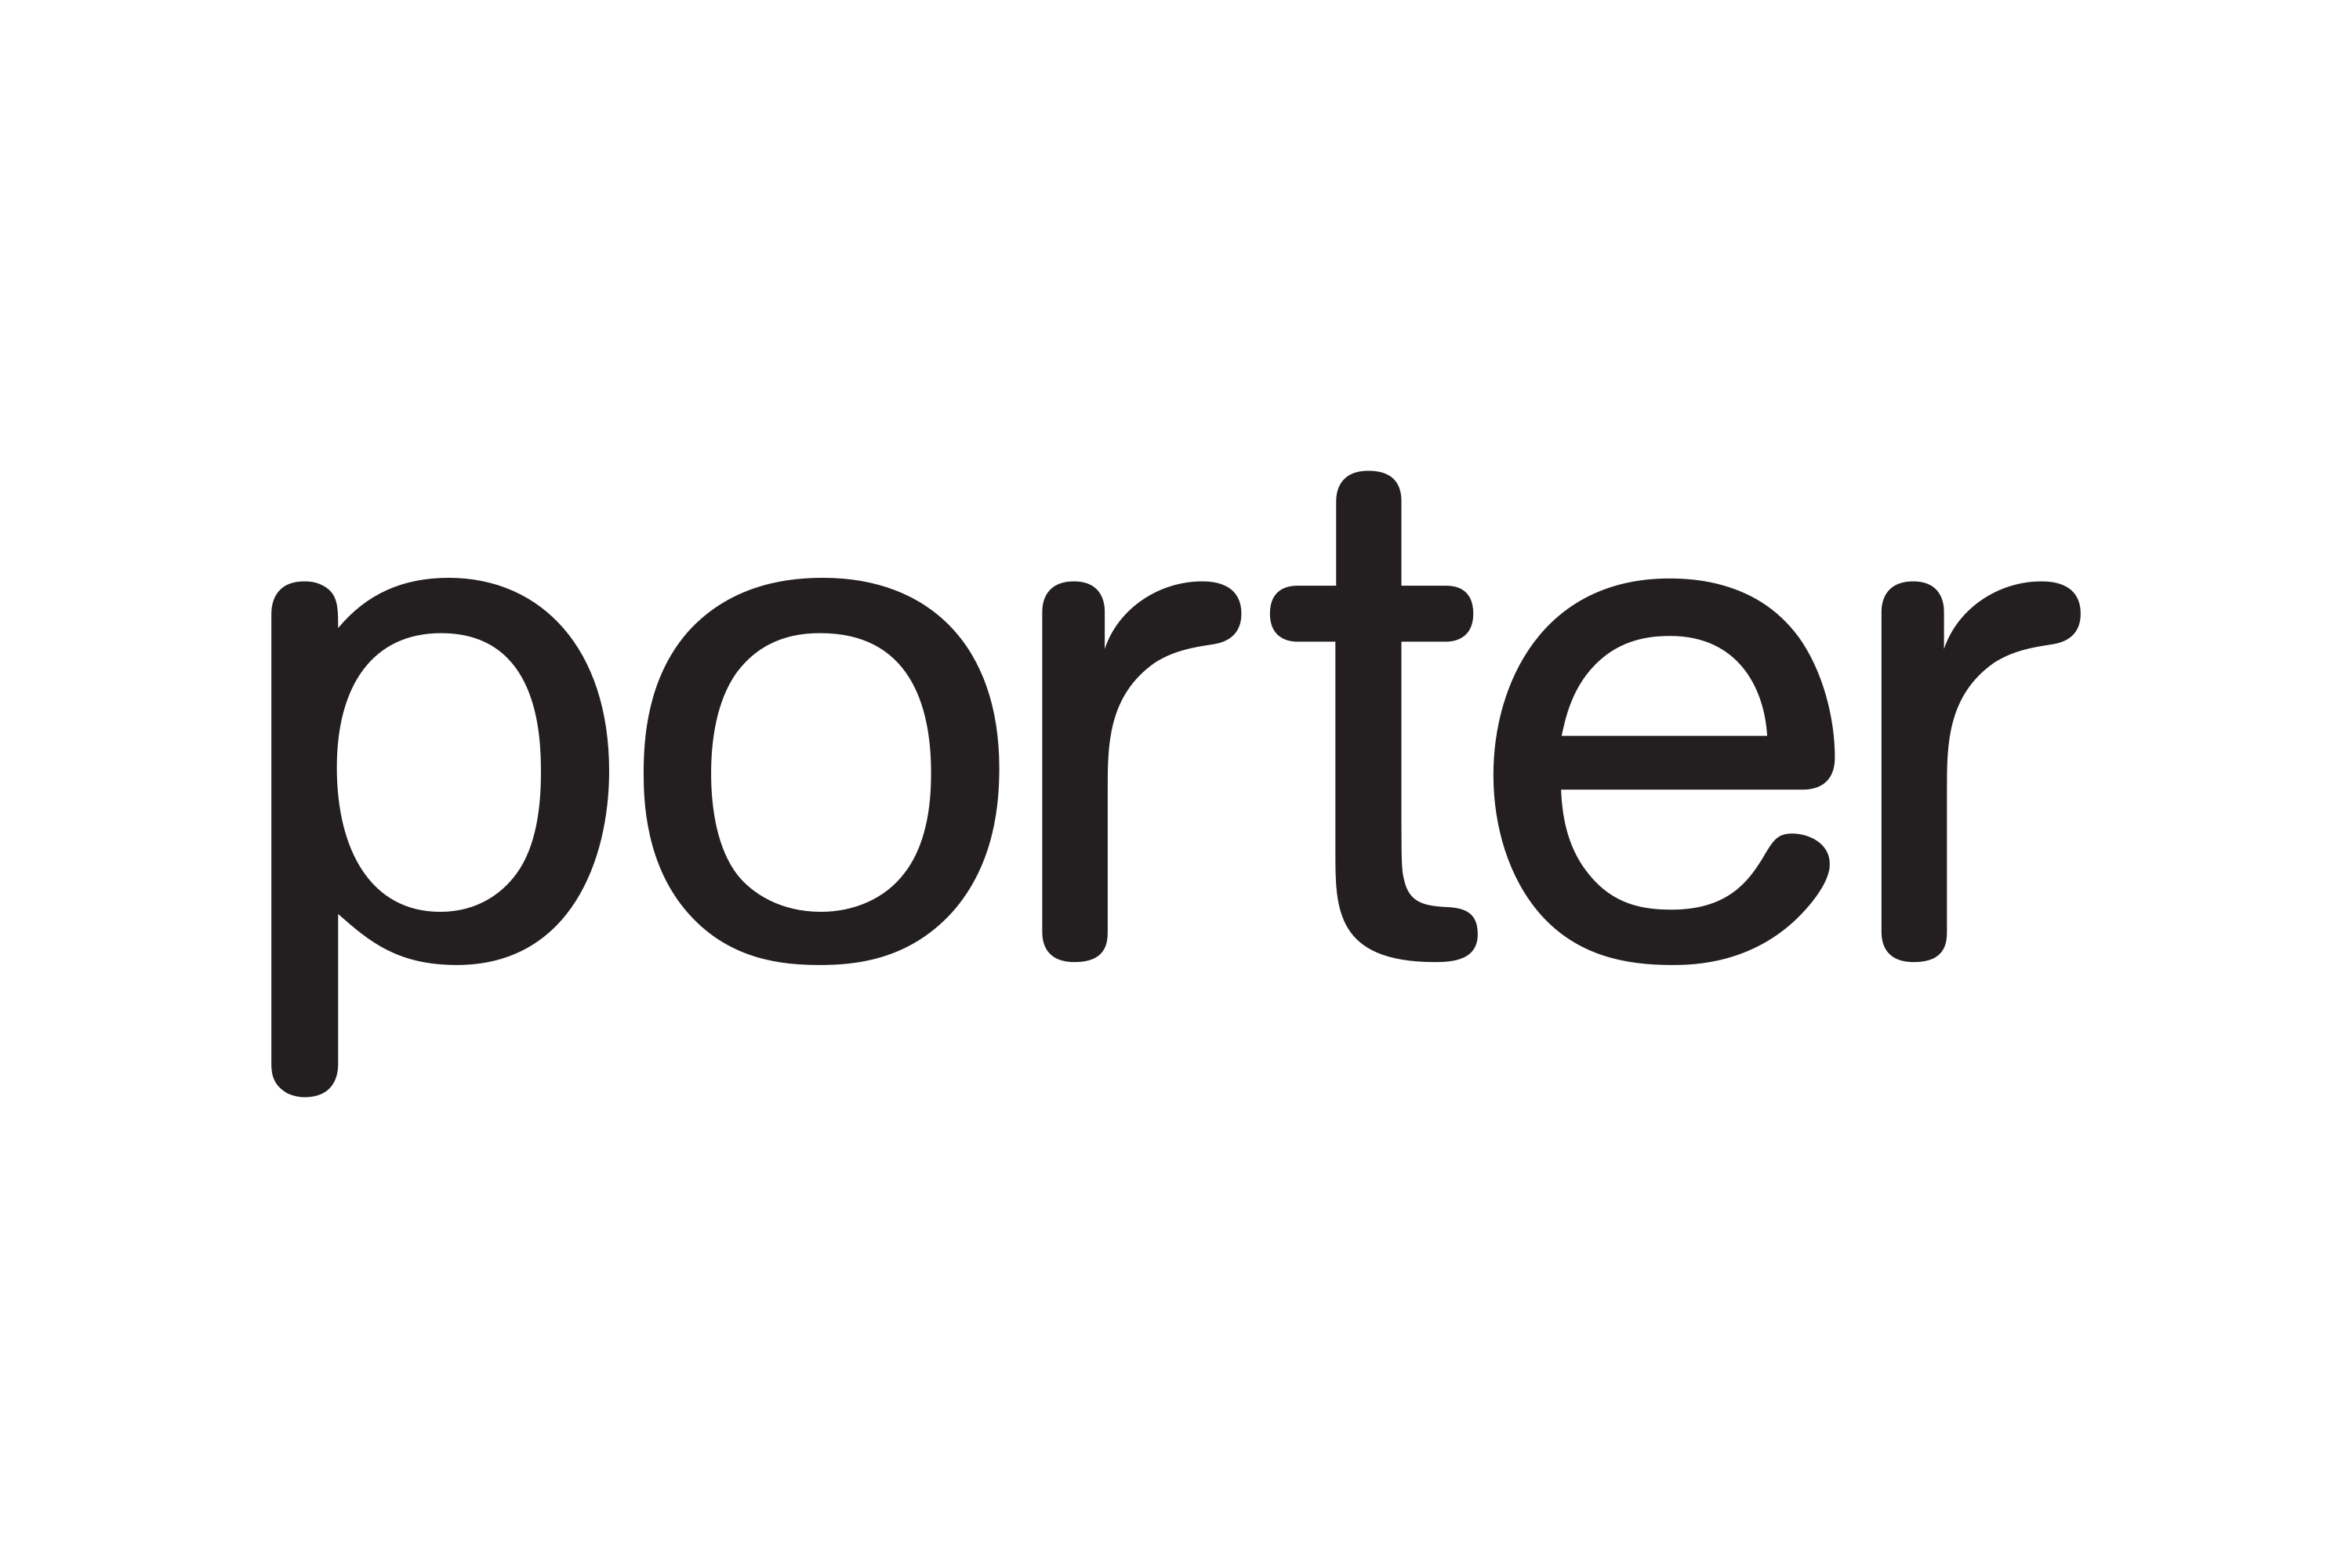 Download Porter Airlines Logo in SVG Vector or PNG File Format - Logo.wine